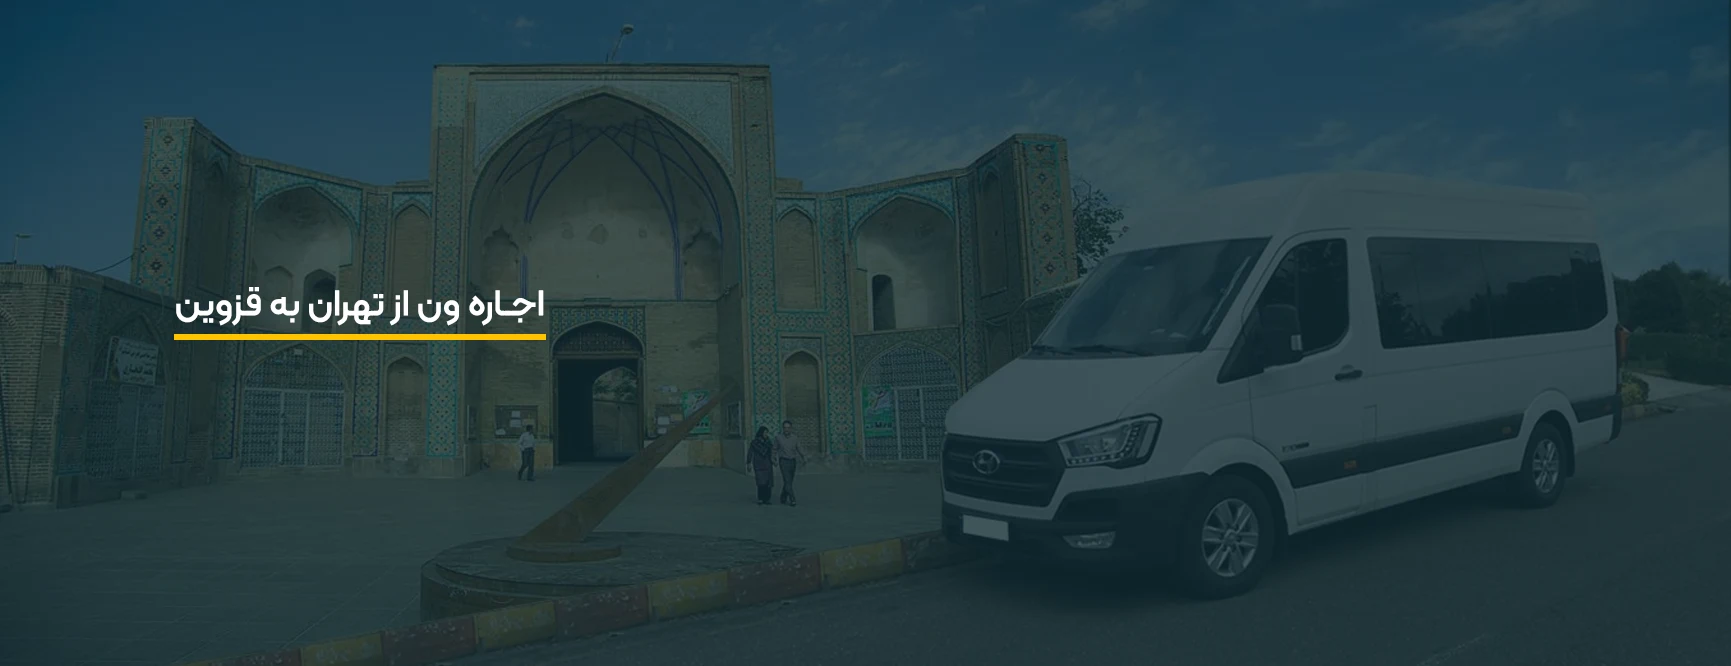 اجاره ون در قزوین، قیمت کرایه ون از تهران به قزوین